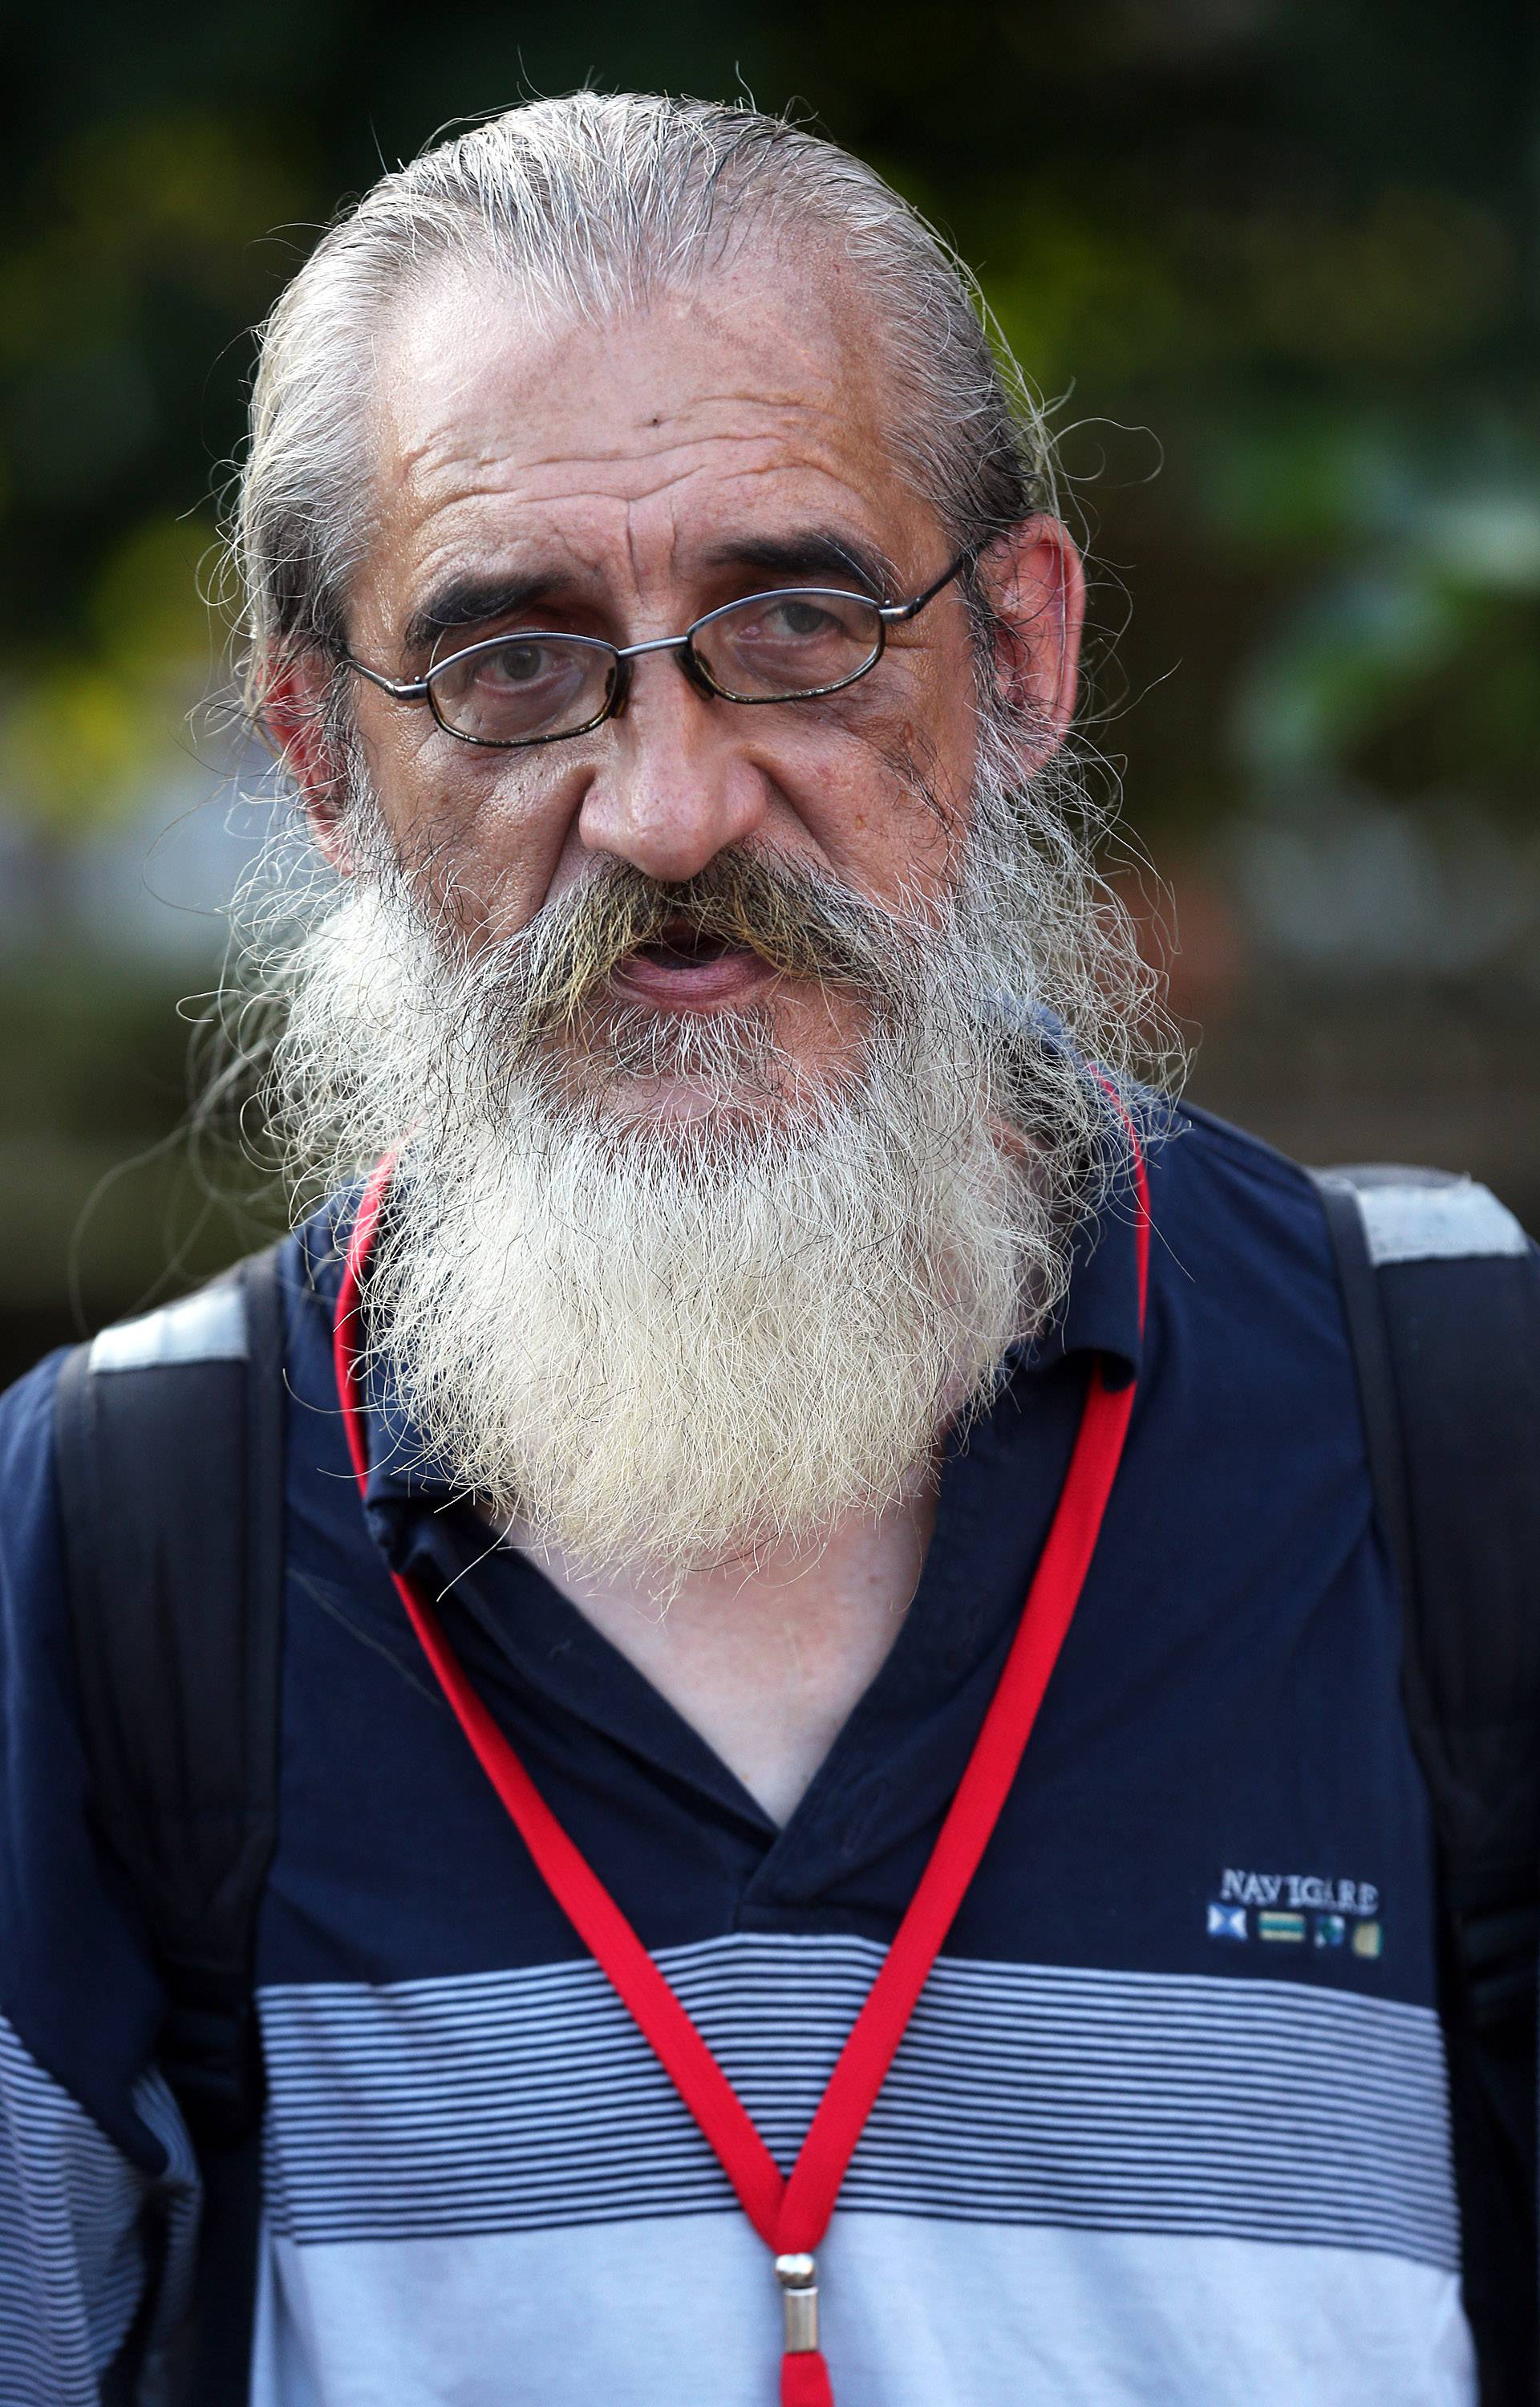 Život na ulici: Mile je pokazao Zagreb kako ga vide beskućnici